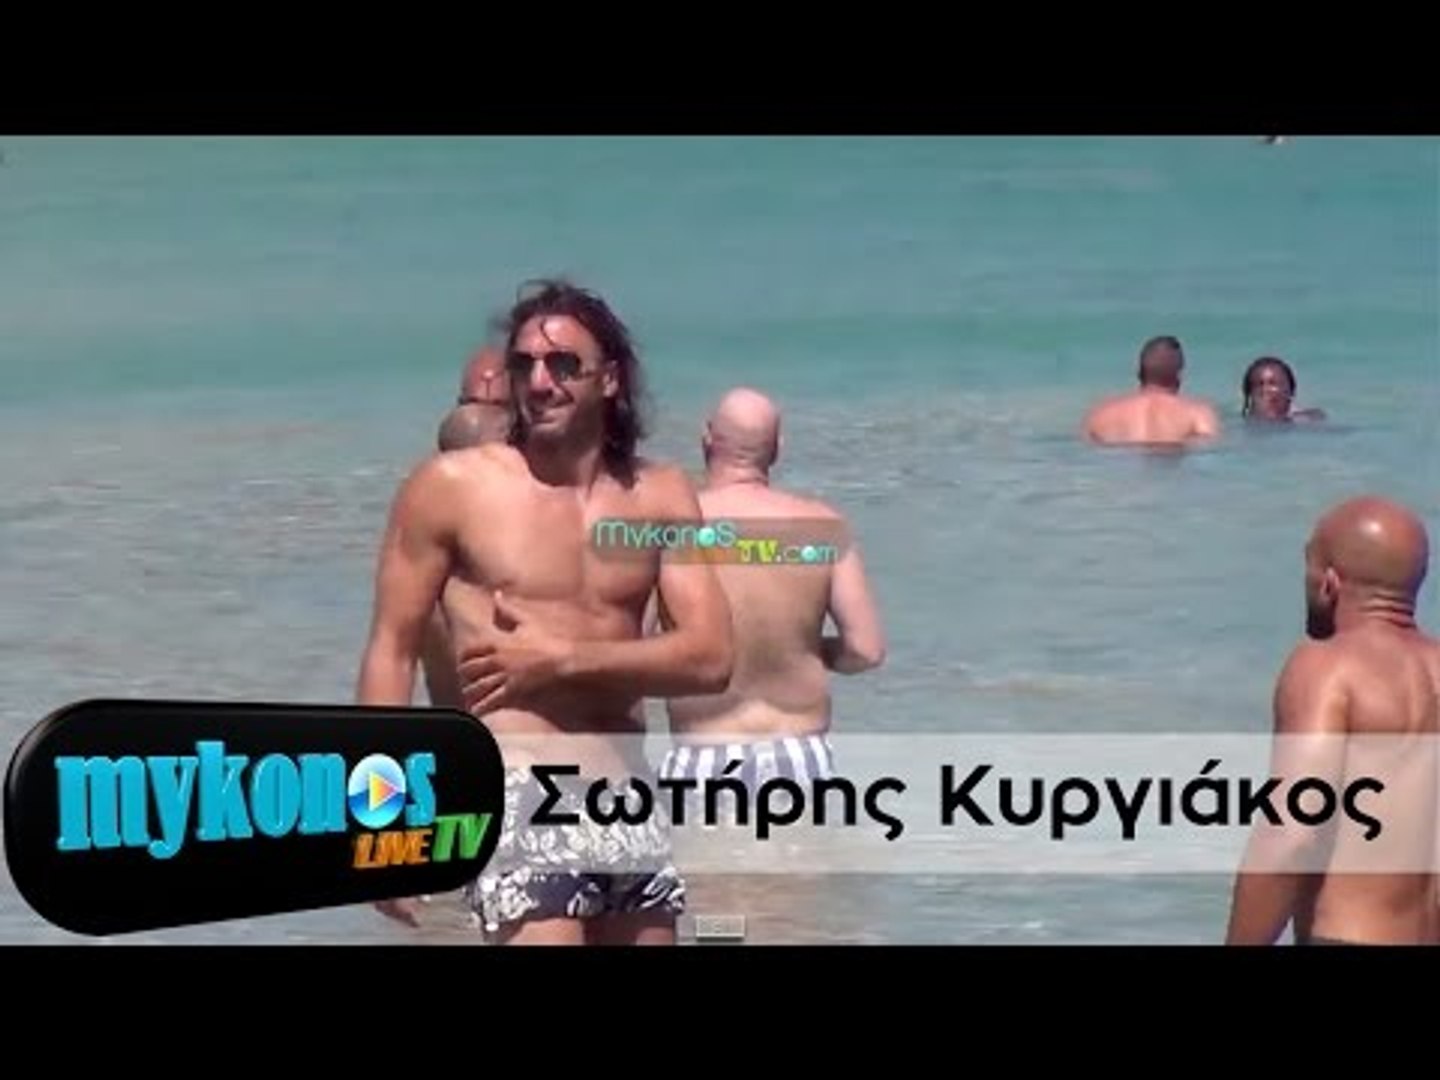 Άφησε τα γήπεδα και έπιασε τις παραλίες Μυκόνου, ο Σωτήρης Κυργιάκος μαζί  με την Φανη χαλκια - video Dailymotion